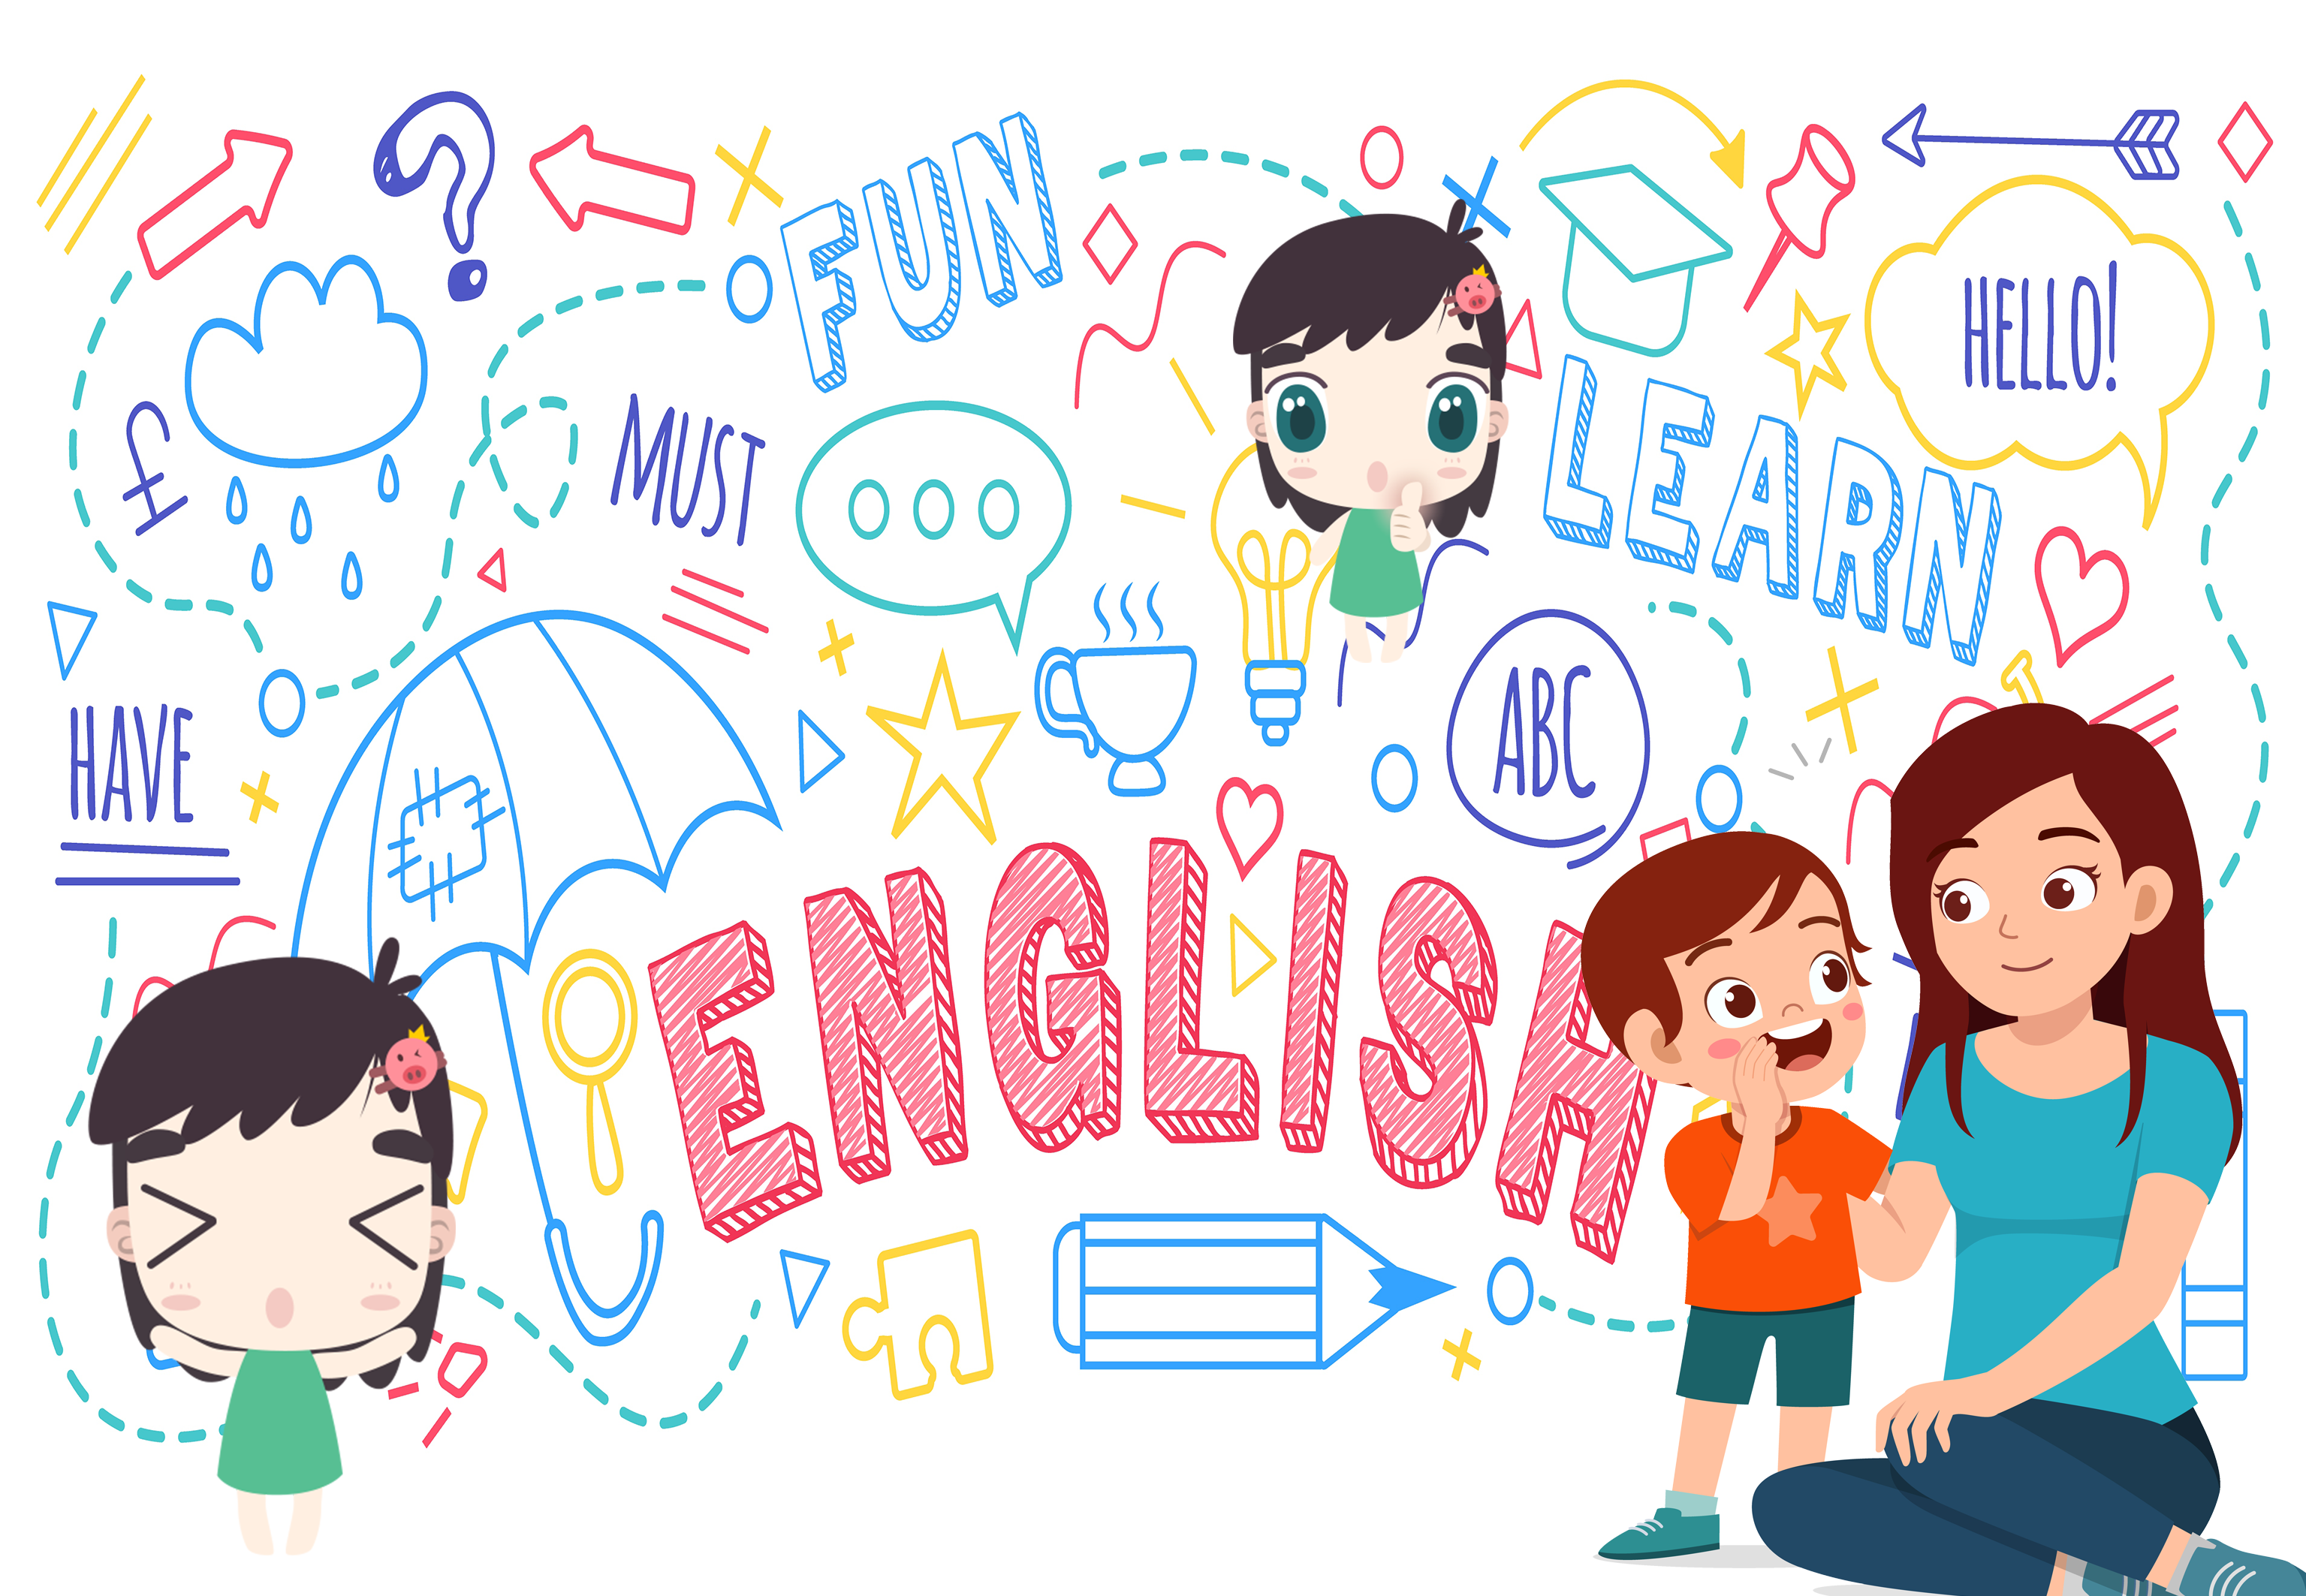 สอนลูกพูดอังกฤษ,สอนลูกพูดภาษาอังกฤษ ในชีวิตประจําวัน, ฝึกพูดภาษาอังกฤษกับลูก, สอนภาษาอังกฤษลูก, วิธีสอนภาษาอังกฤษลูก, ฝึกลูกพูดภาษาอังกฤษ , สอนลูกพูดภาษาอังกฤษ, สอนภาษาอังกฤษลูกด้วยตัวเอง